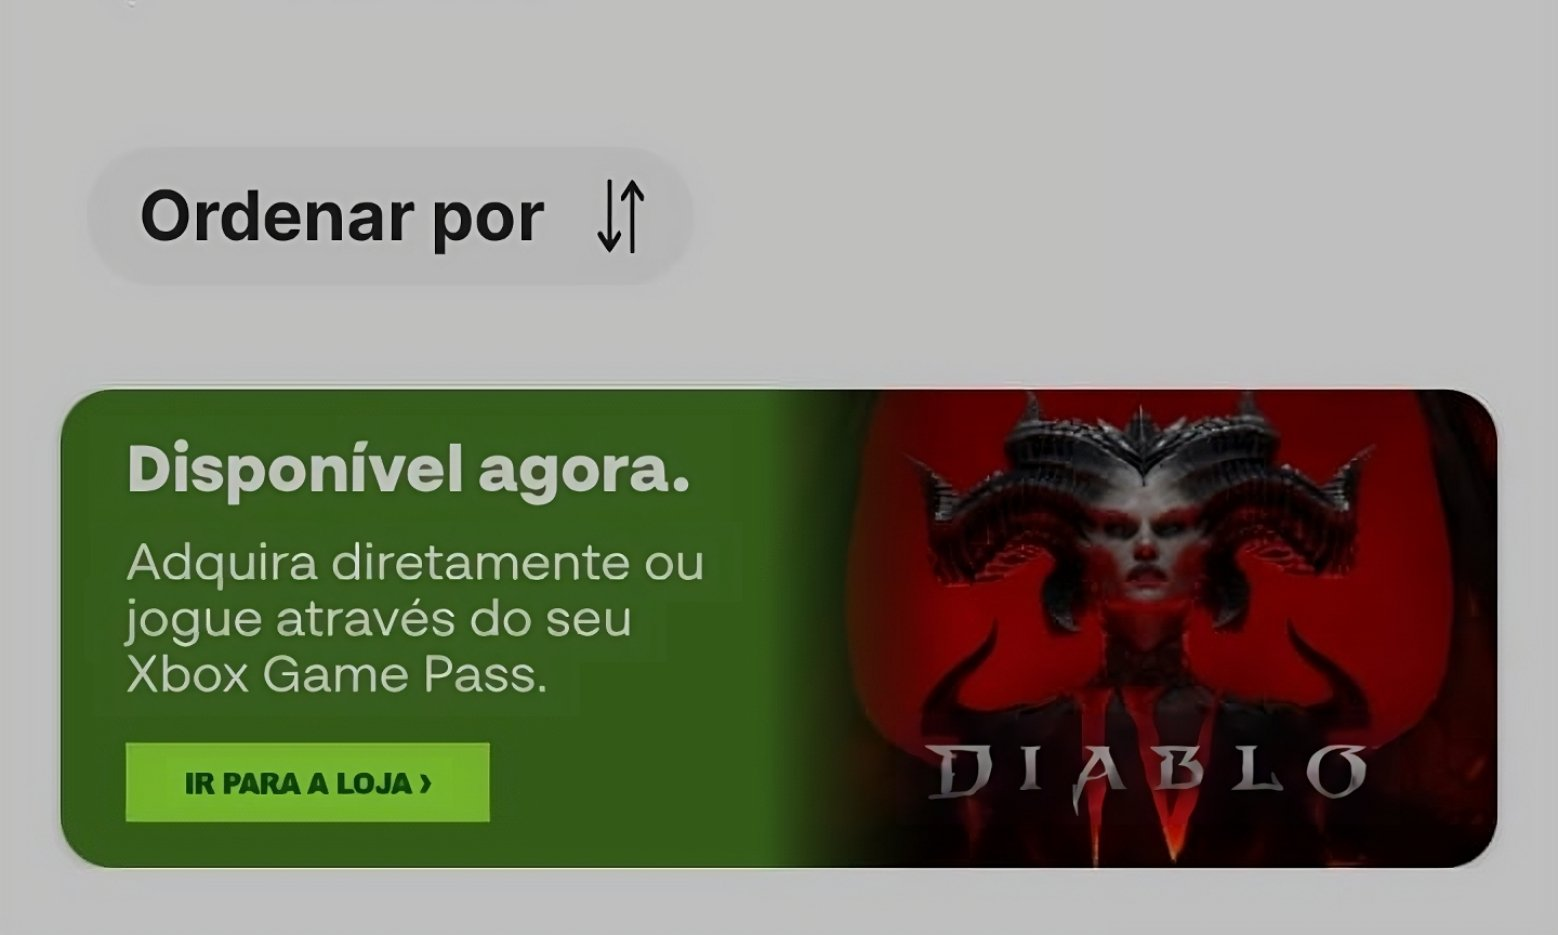 Diablo 4 + gamepass. Диабло баннер в Америке. Богоподобный гейм пасс. Диабло 4 волк. Как установить diablo 4 game pass